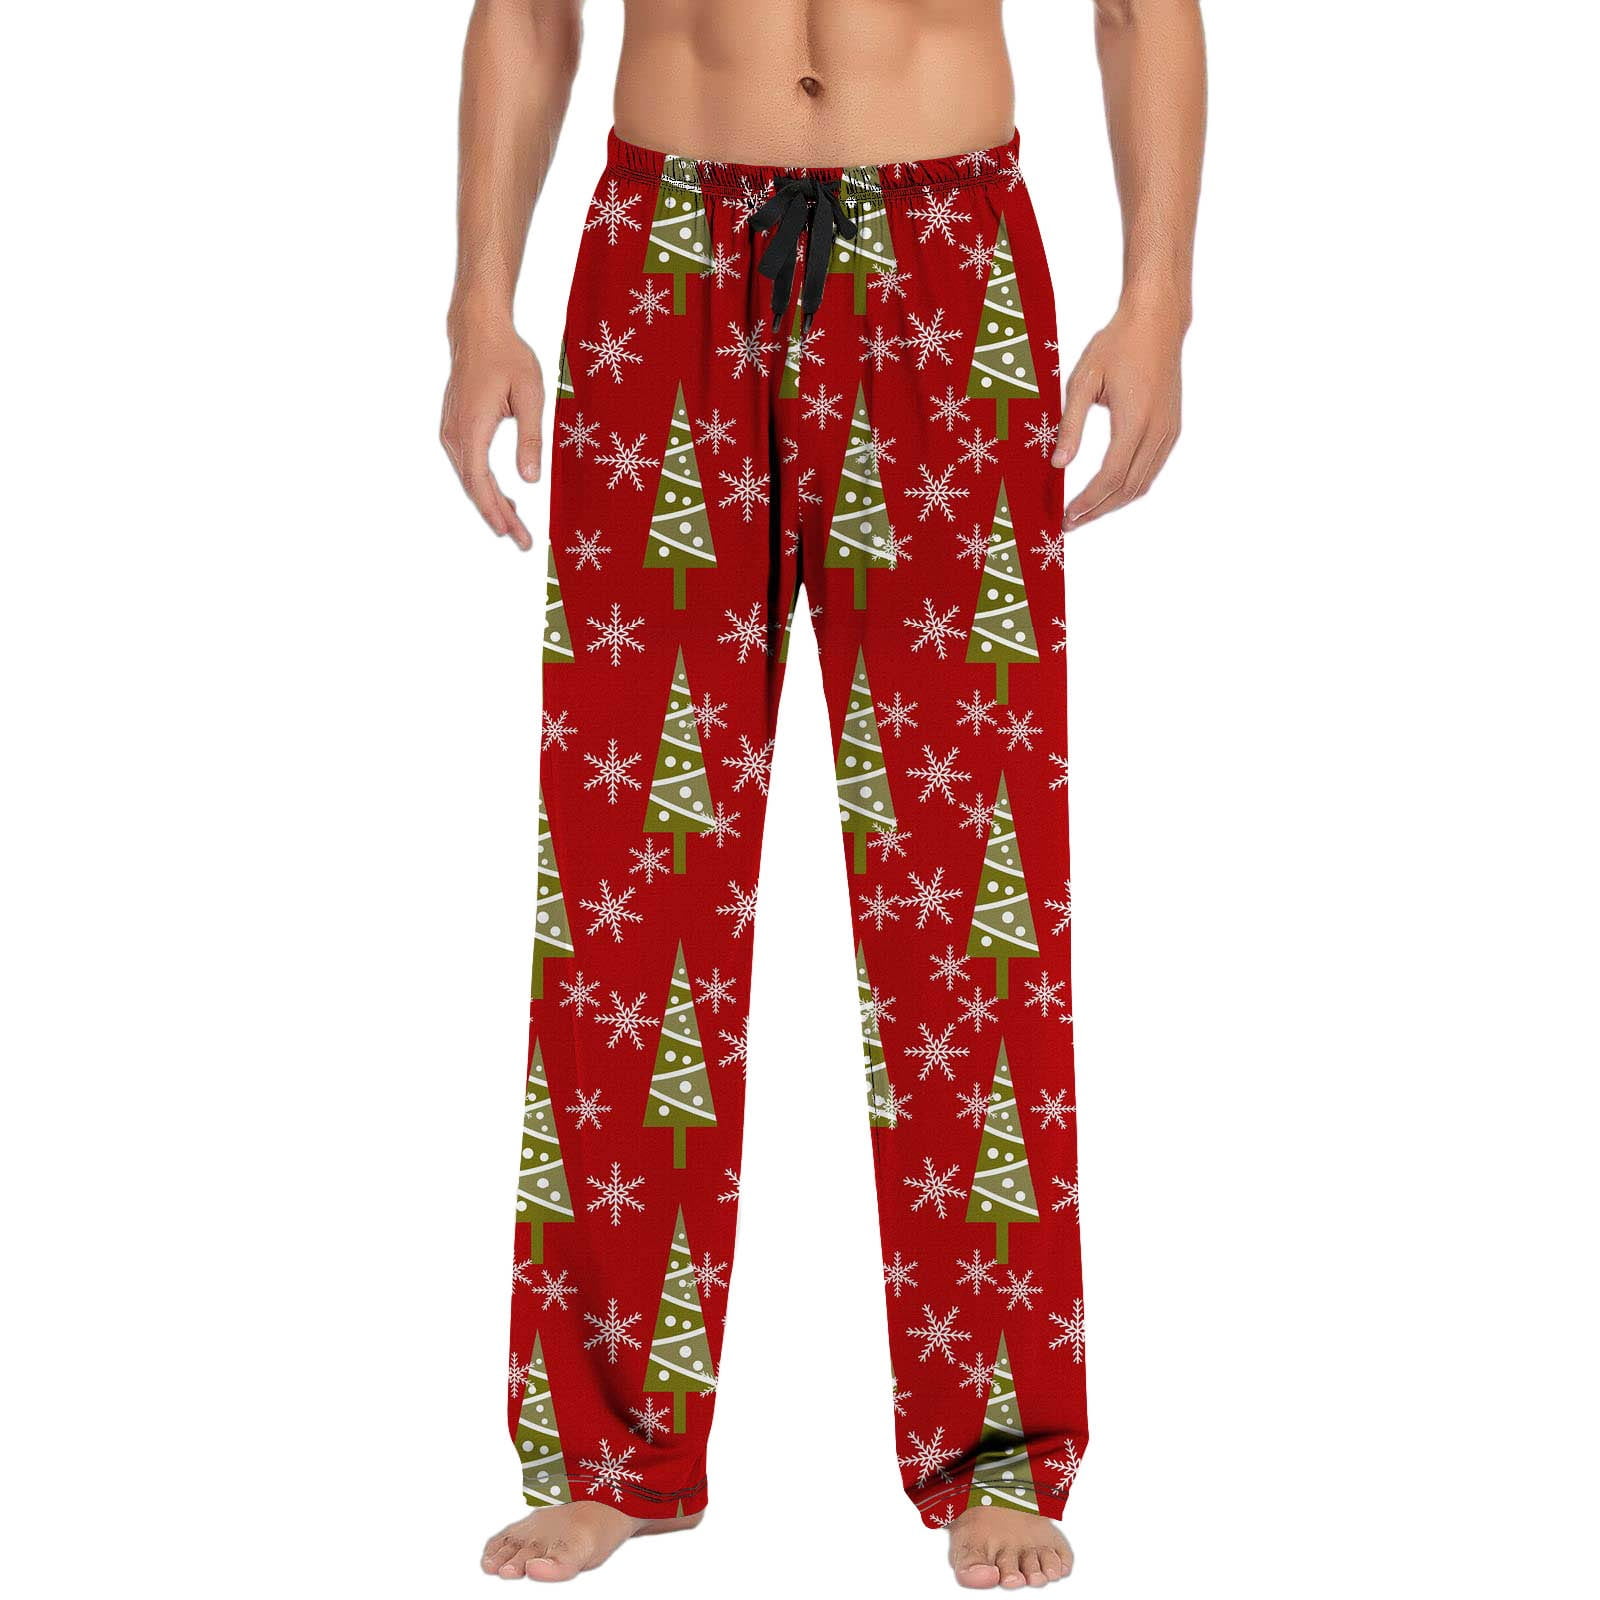 PMUYBHF Mens Jean Shorts 34 Christmas Mens Casual Pants Pajama Pants ...